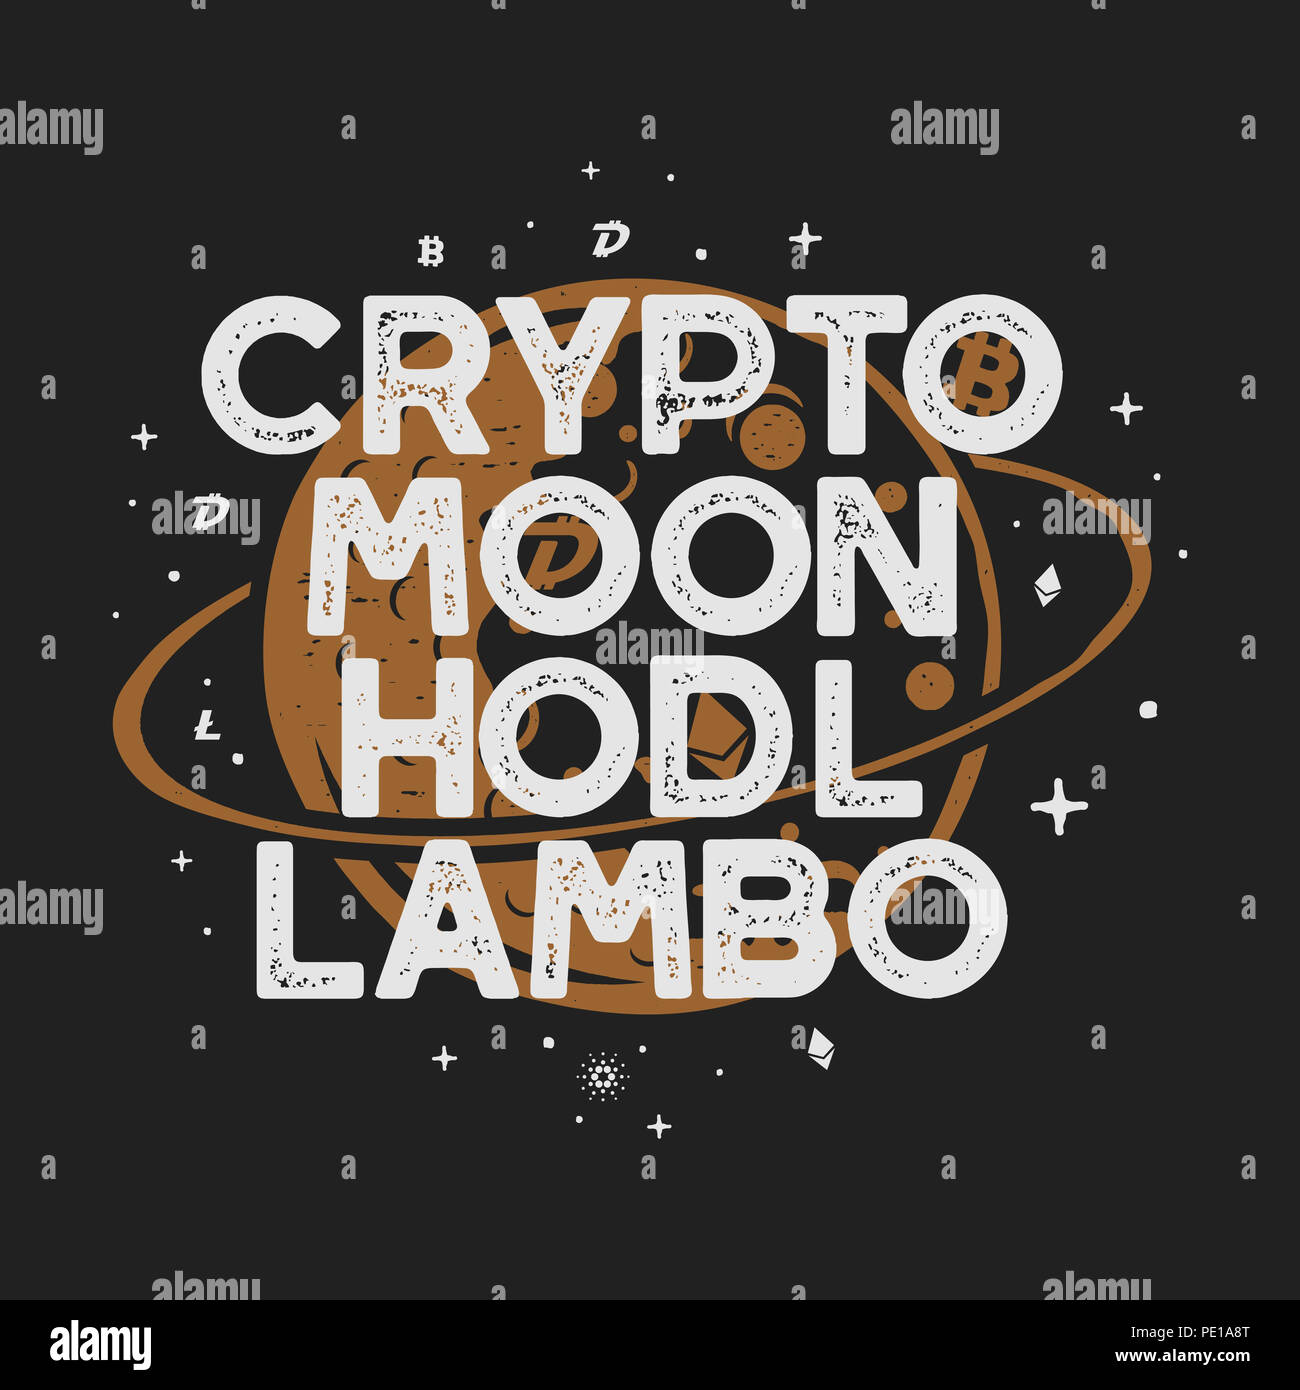 Drôle Cryptocurrency vintage T-shirt ou de l'affiche. Illustration de l'orbite lunaire rétro avec des devises différentes et drôles de mots - crypto, lune, hodl, lambo. B Banque D'Images